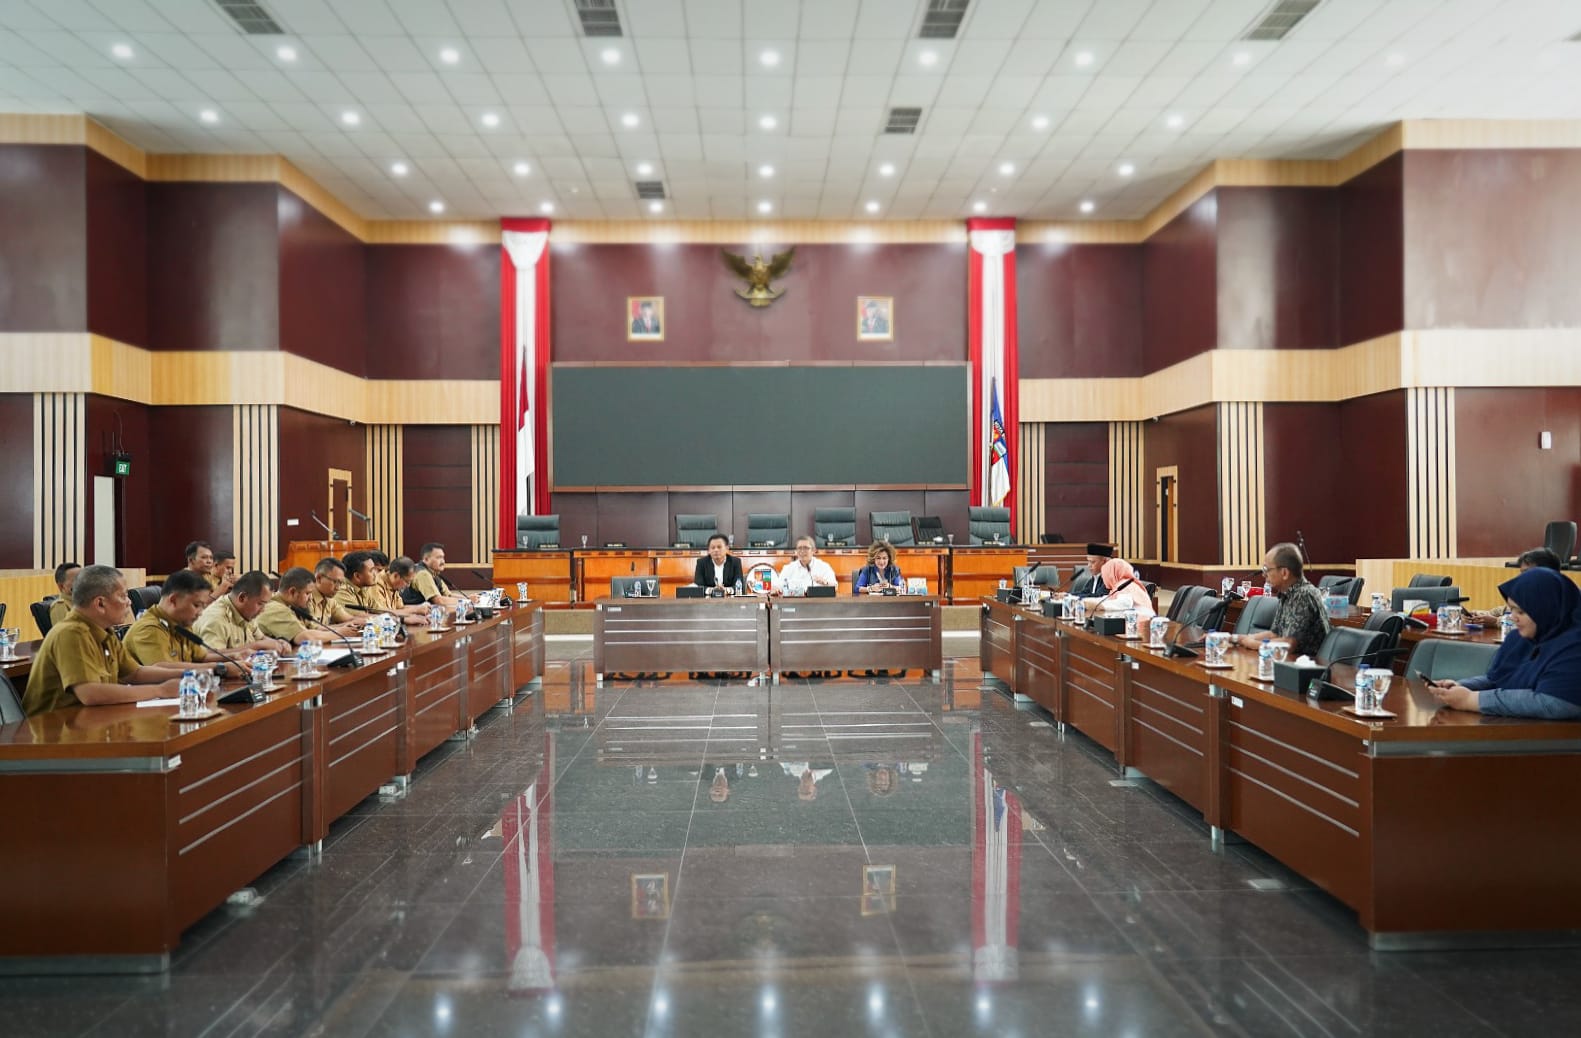 Pembentukan verifikasi faktual untuk Penerimaan Peserta Didik Baru (PPDB) SMP di Kota Bogor mendapar sorotan tajam dari DPRD.